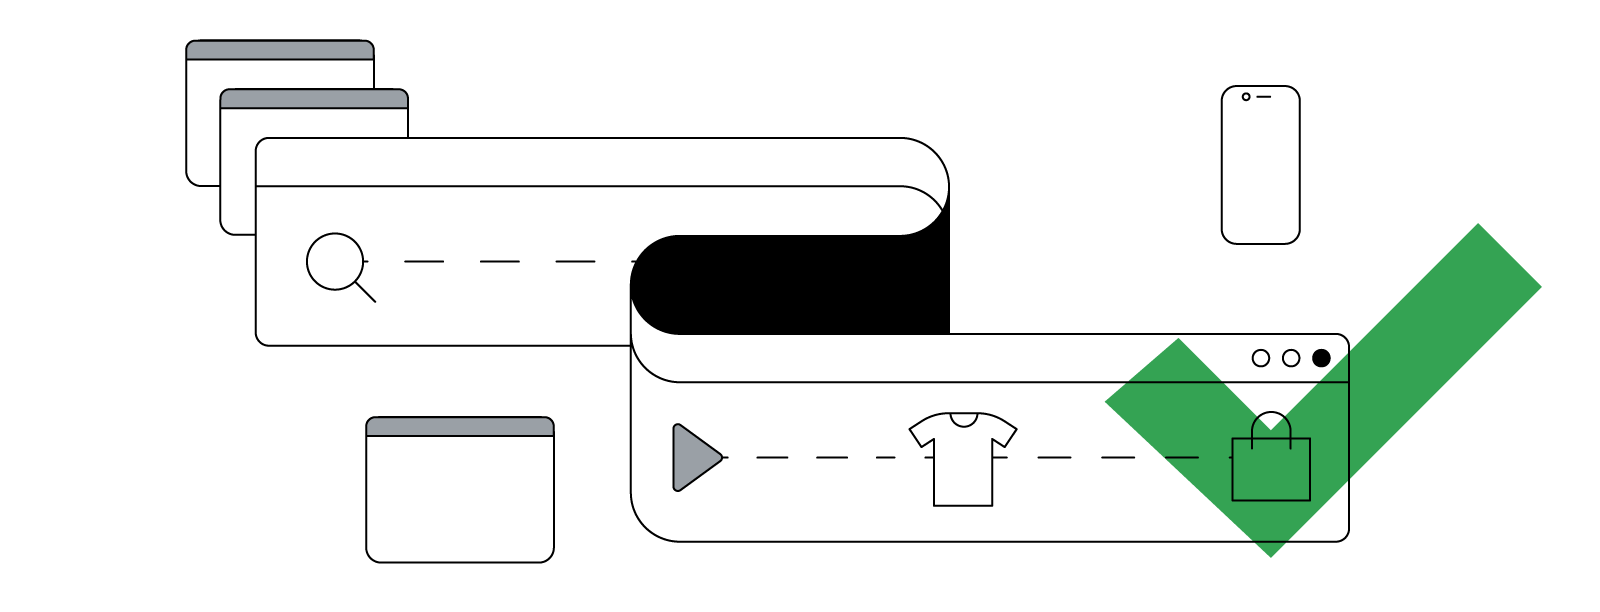 Illustrazione astratta di una finestra di navigazione curva e in flessione, che mostra il percorso non lineare del consumatore dalla ricerca all'acquisto su più dispositivi.